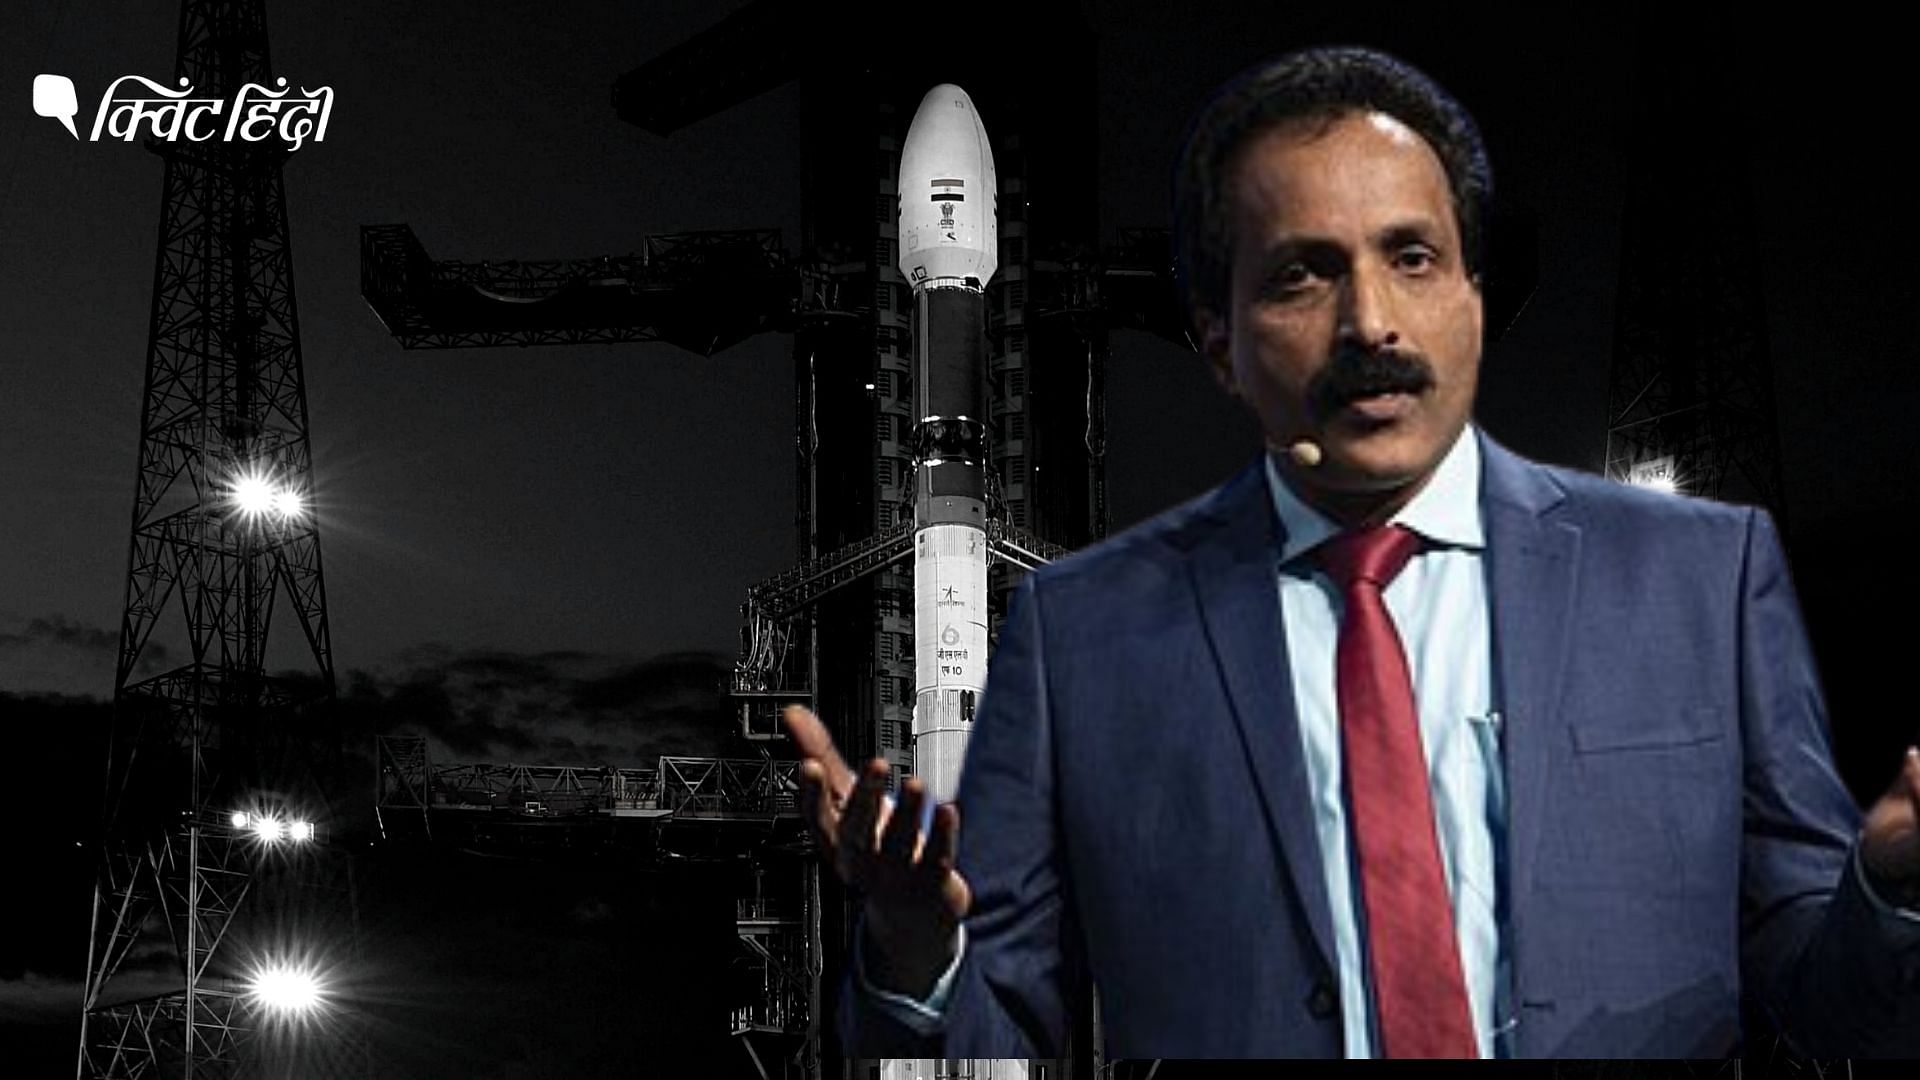 <div class="paragraphs"><p>रॉकेट वैज्ञानिक एस. सोमनाथ बने ISRO के नए प्रमुख, के. सिवान की जगह लेंगे</p></div>